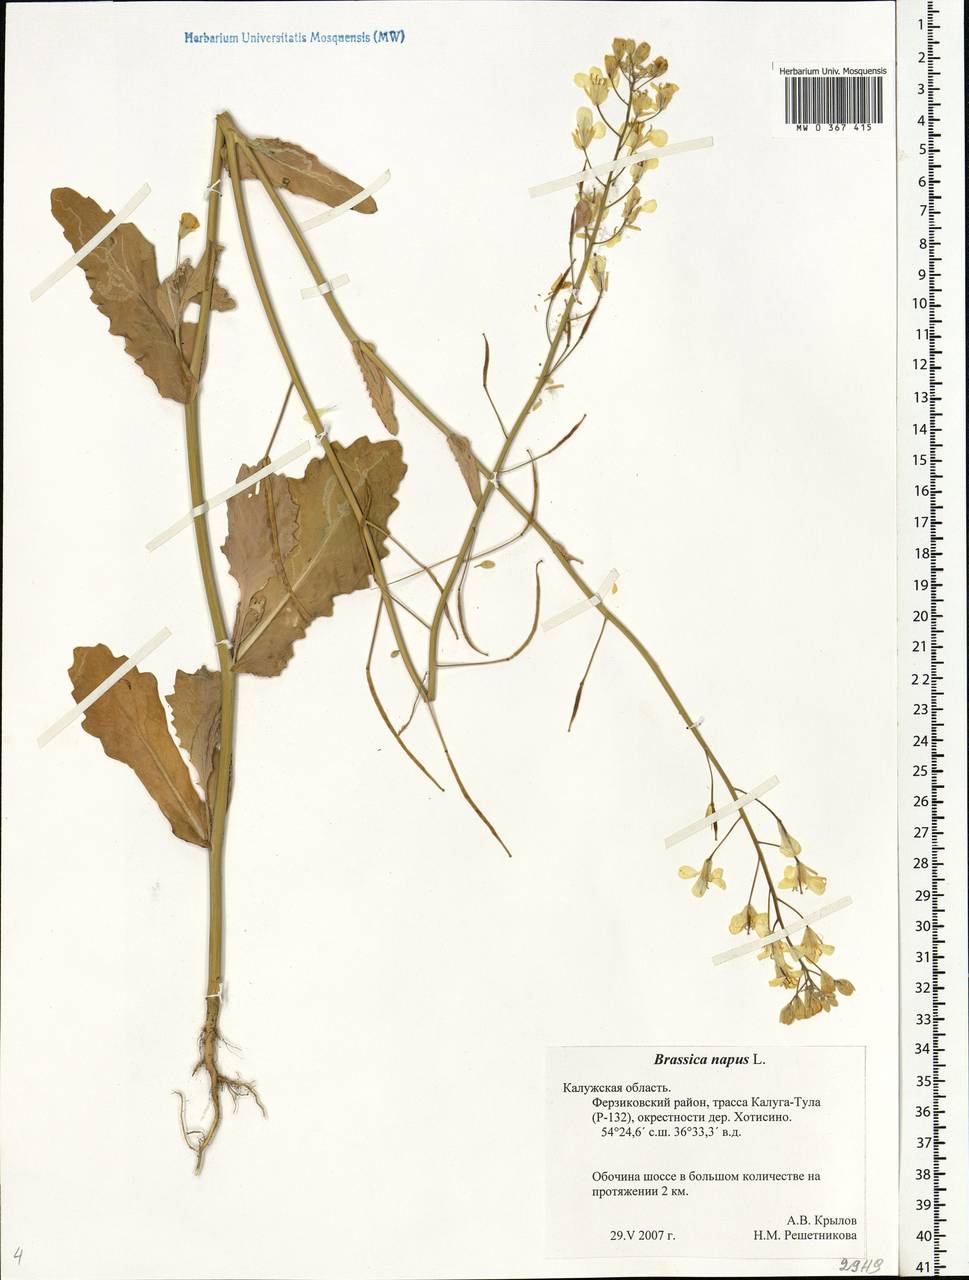 Brassica napus L., Eastern Europe, Central region (E4) (Russia)